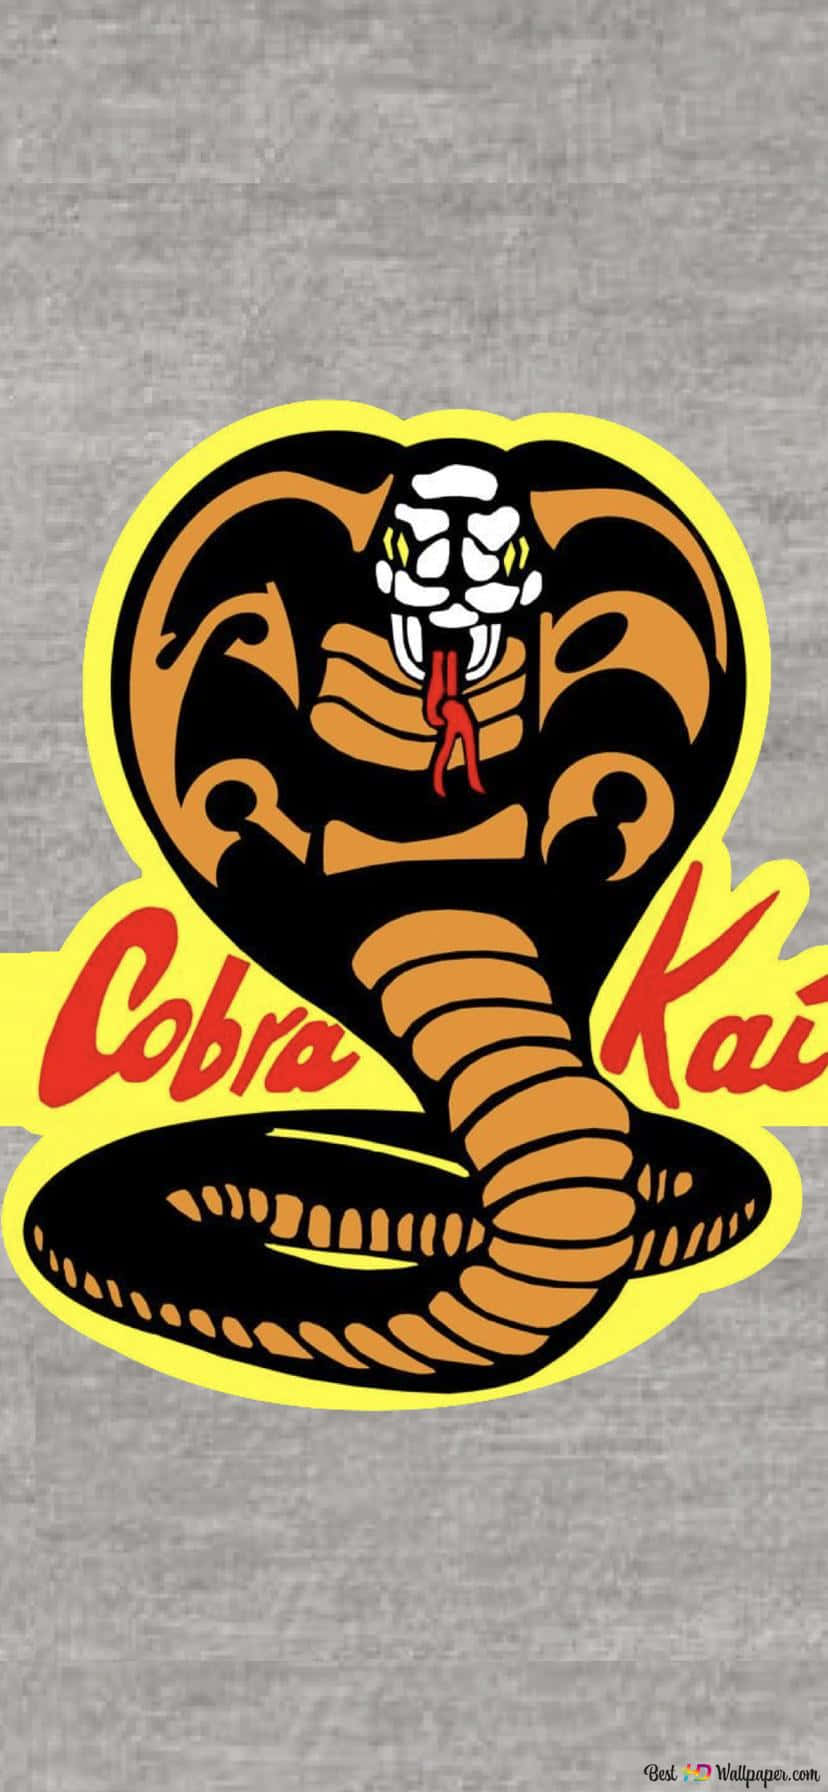 Fådet Bästa Av Två Världar Med Cobra Kai Iphone Xr Som Bakgrundsbild På Din Dator Eller Mobiltelefon.